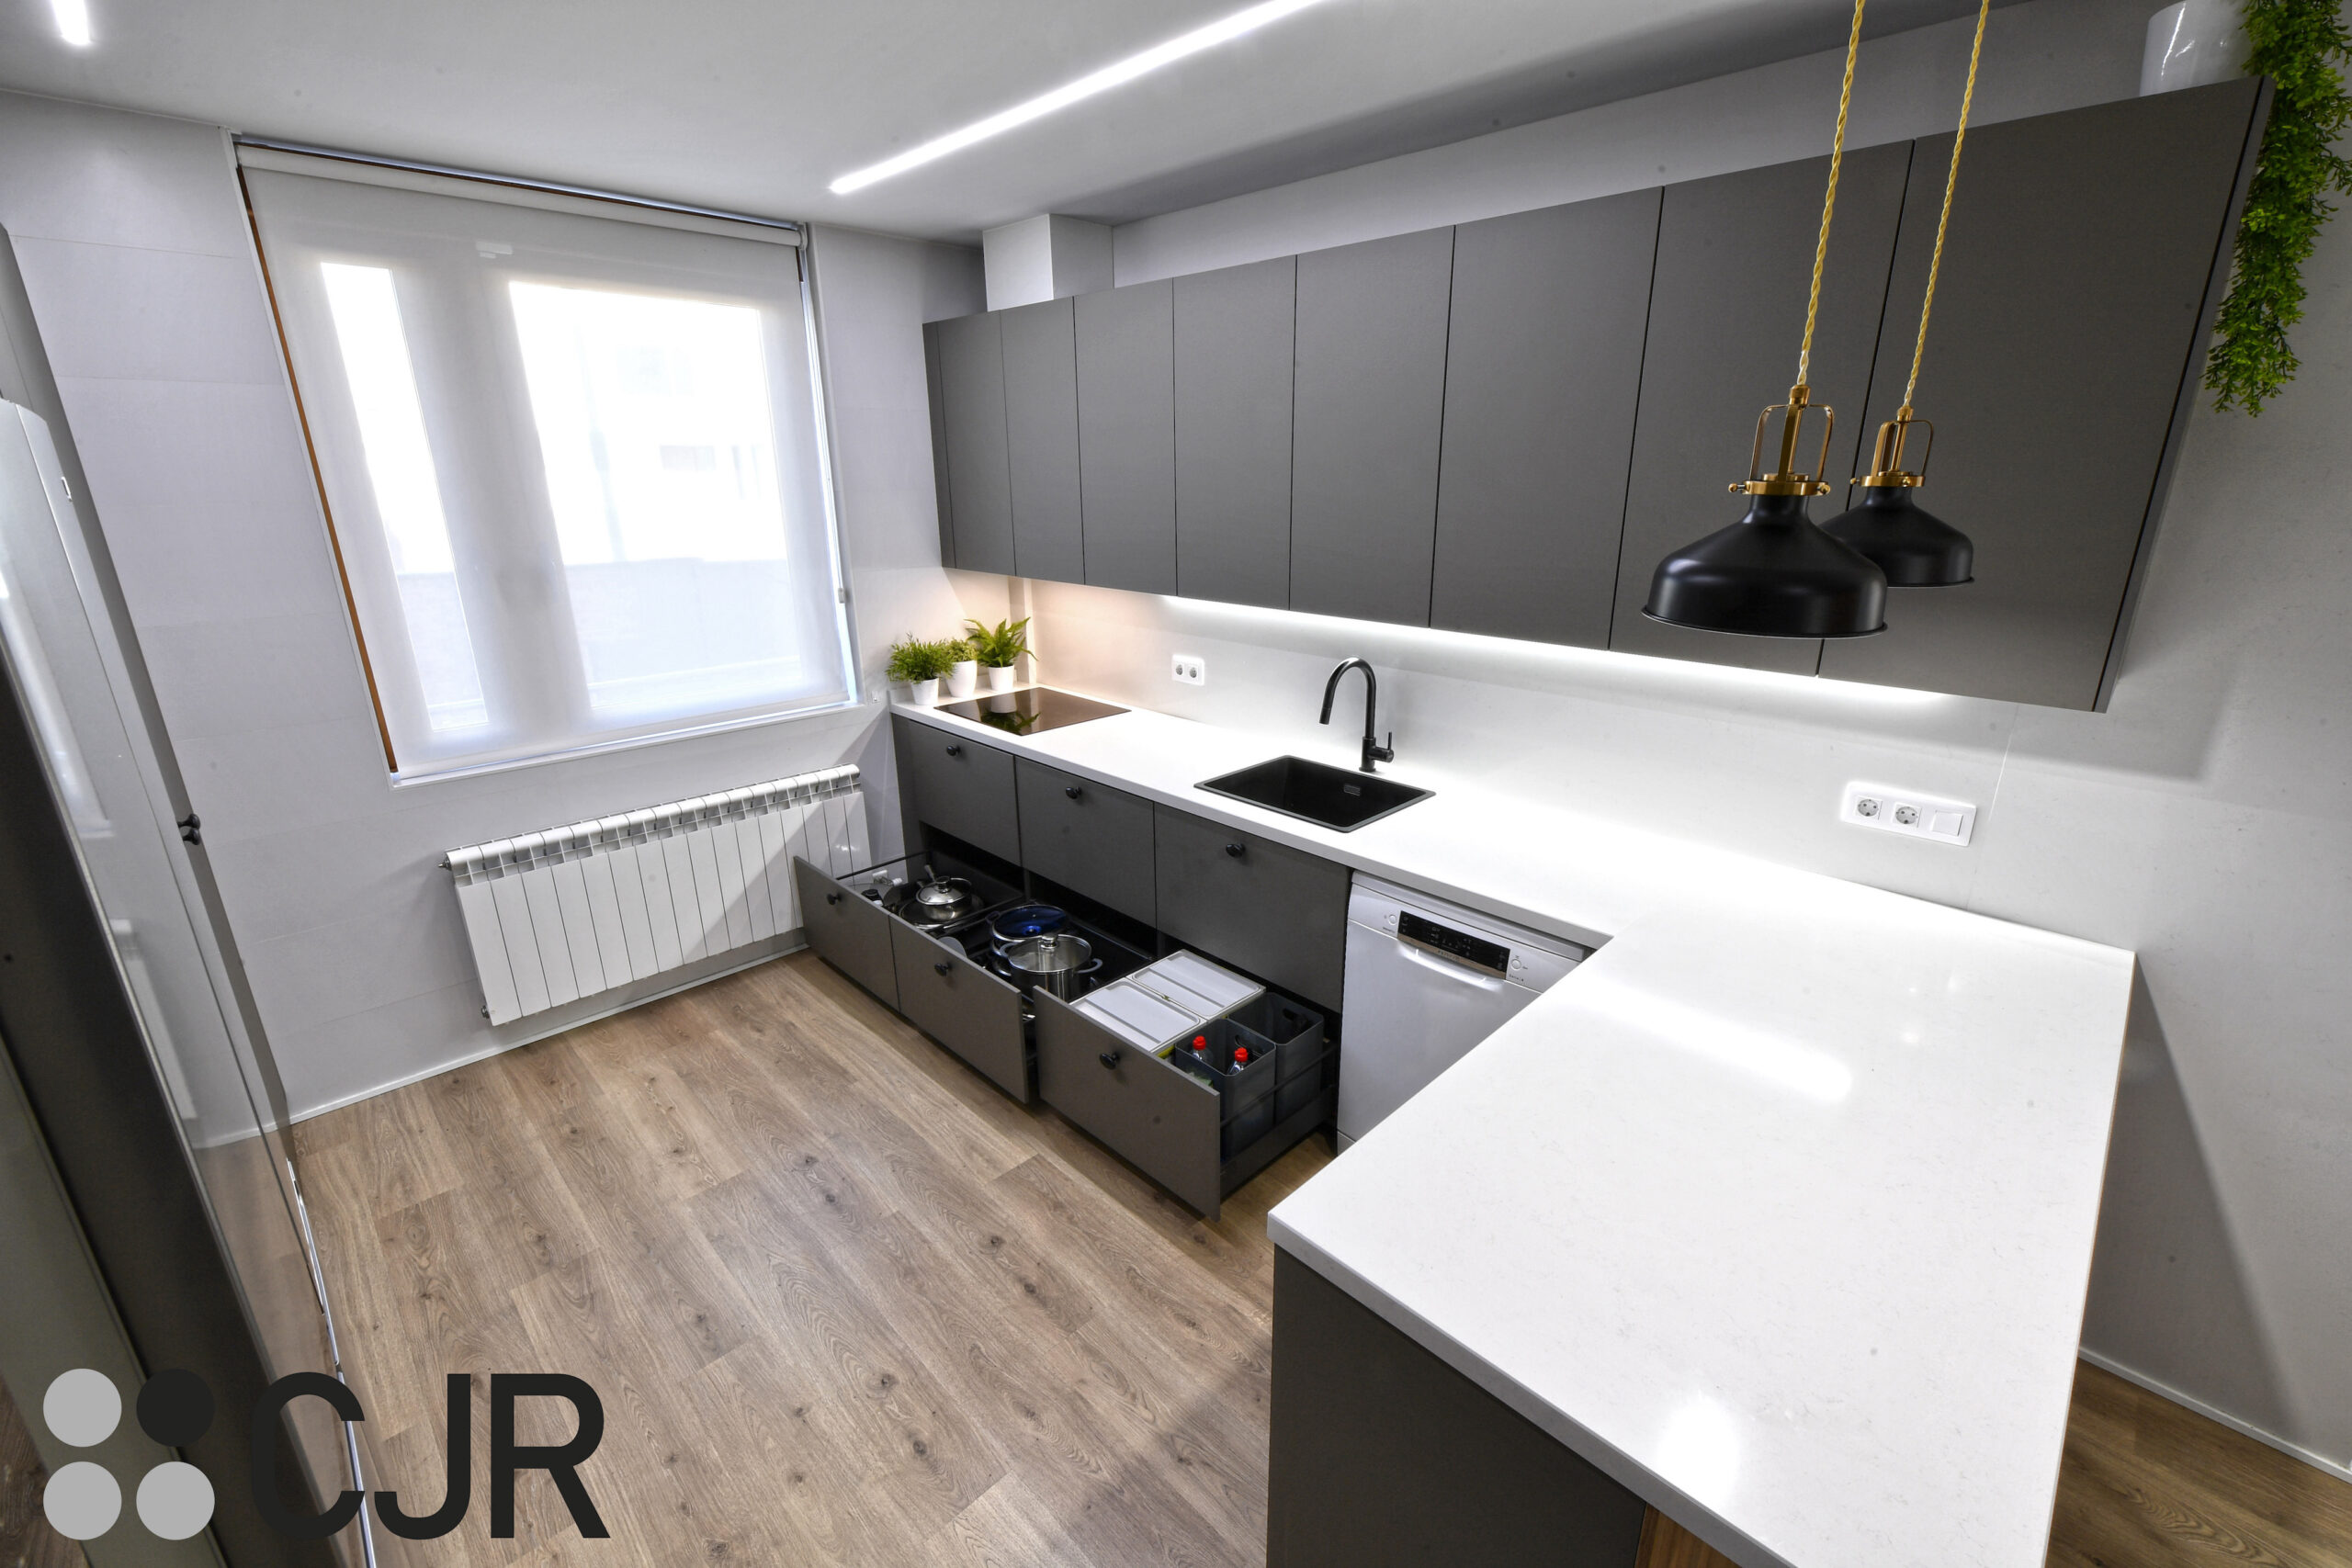 muebles bajos de cocina en cocina gris y madera moderna con vitrinas iluminadas cocinas cjr